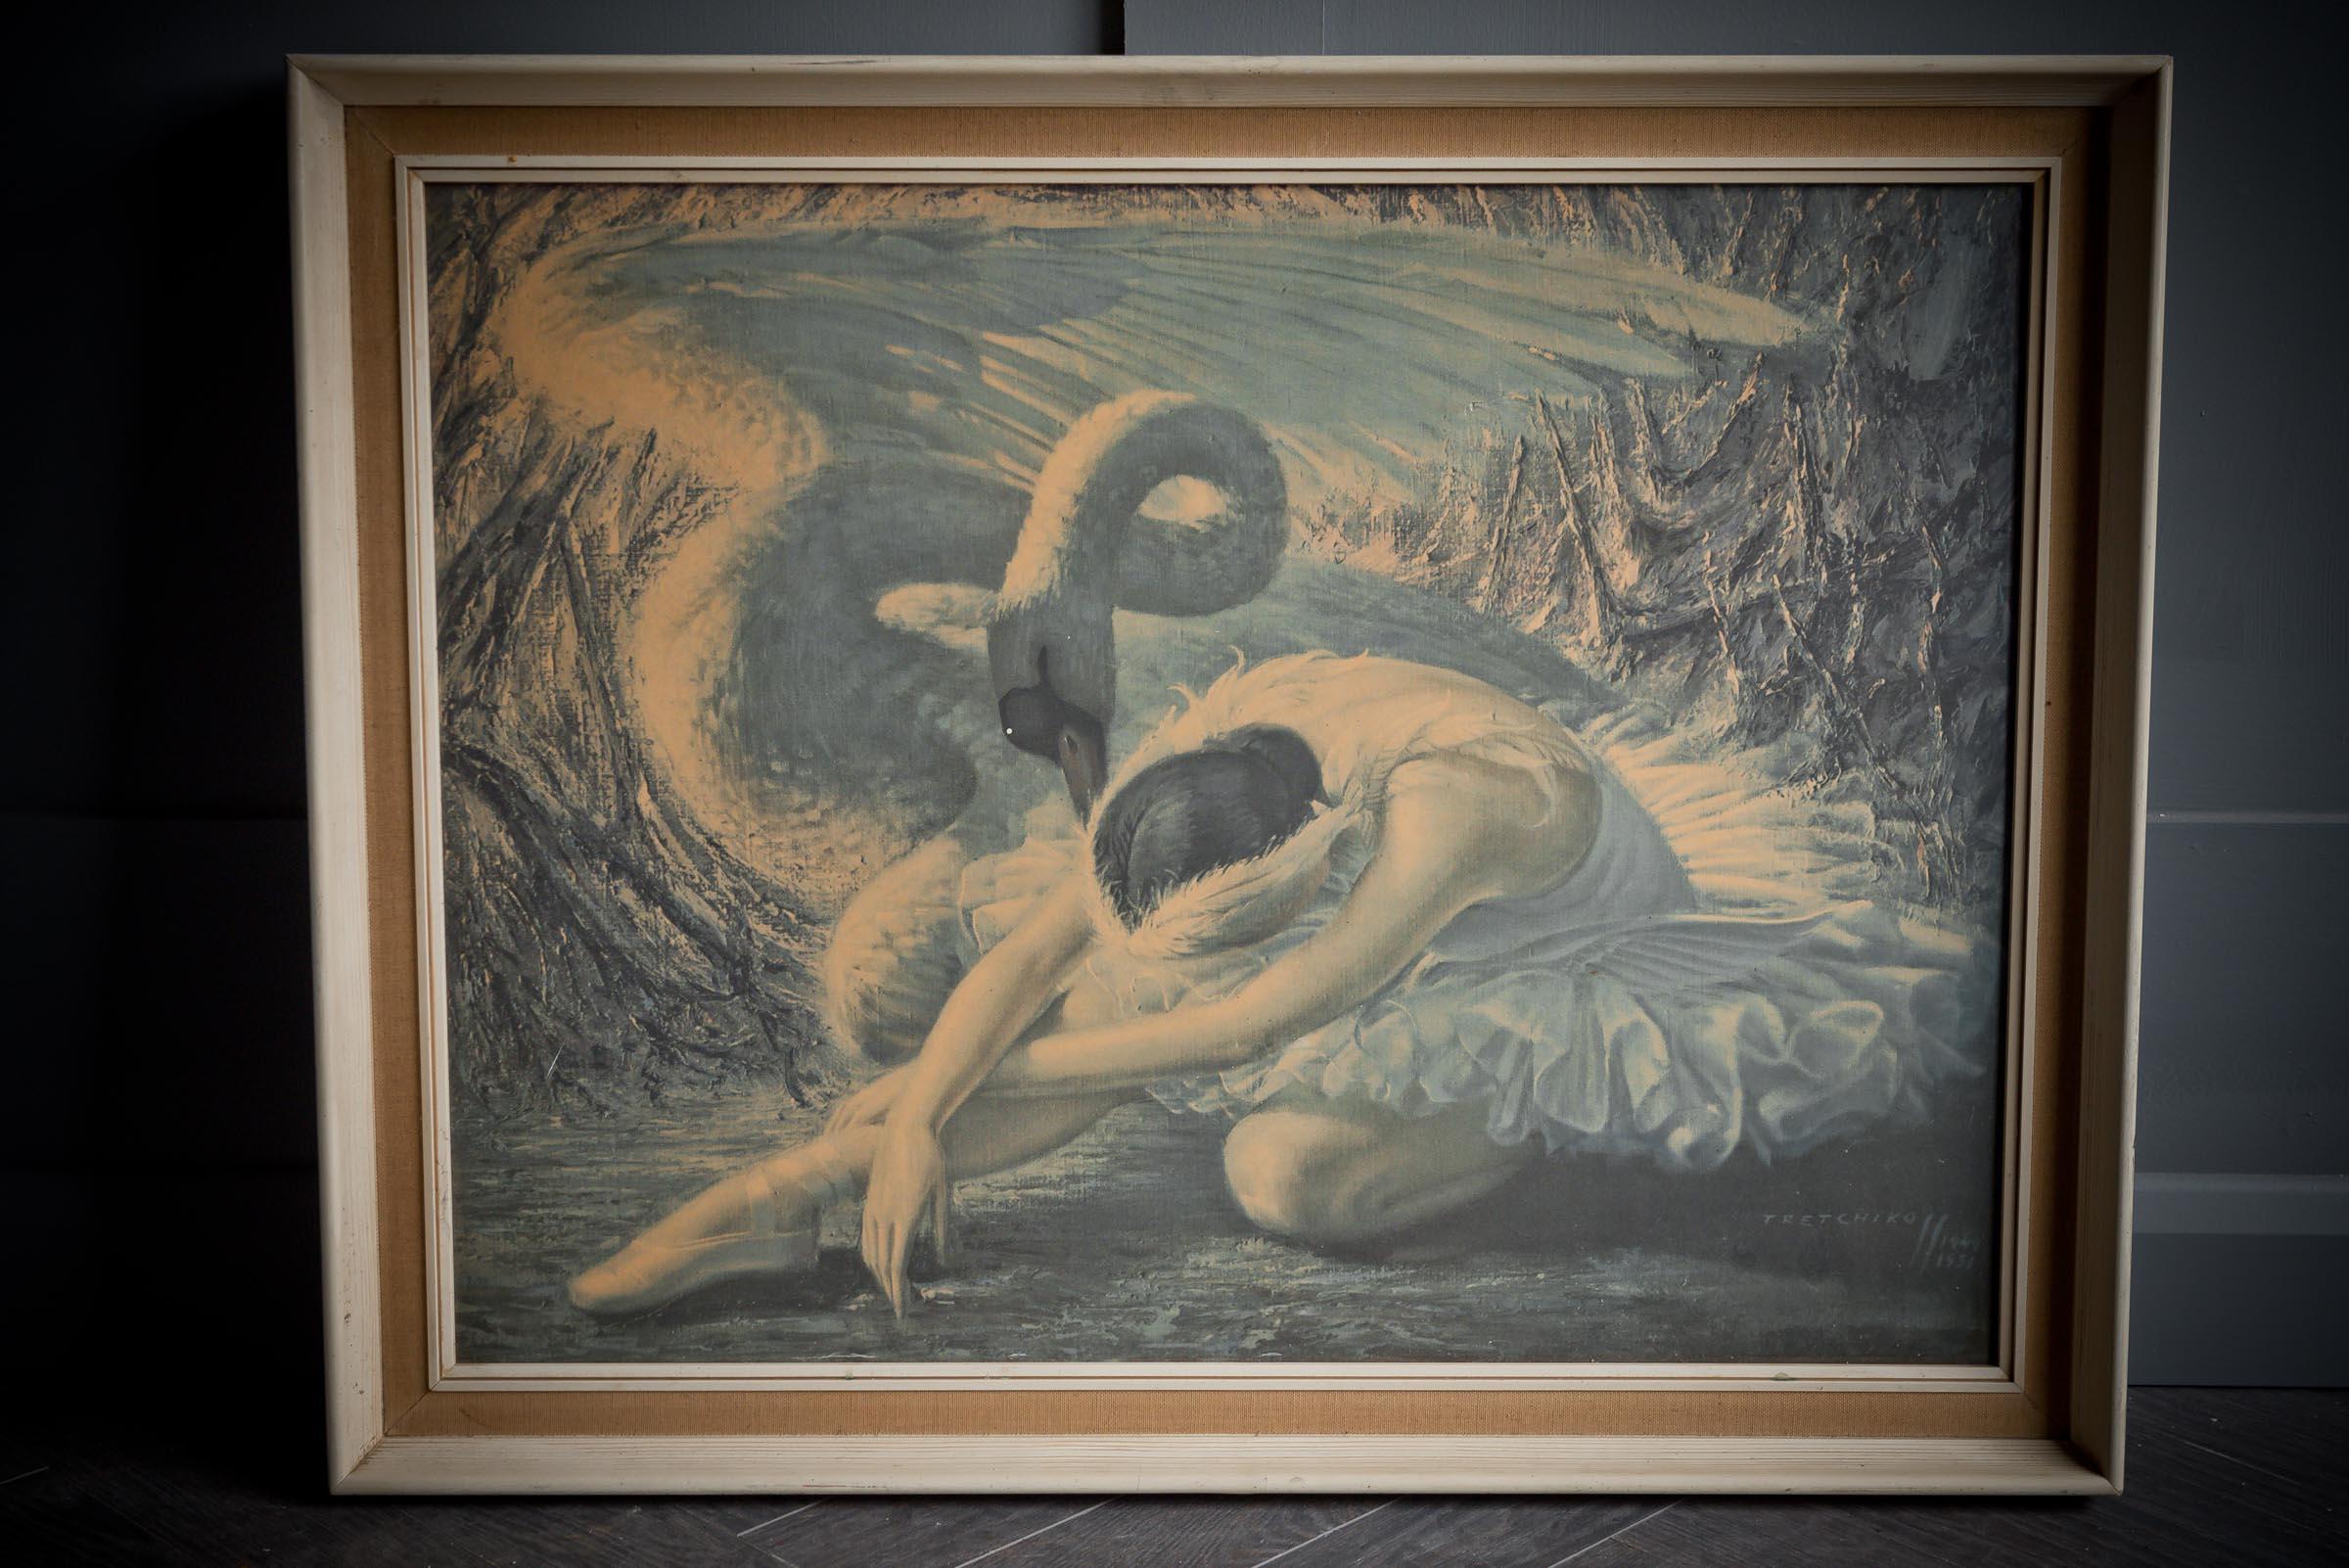 Le cygne mourant de Vladimir Tretchikoff a été réalisé en 1949 et est considéré comme l'une des célèbres œuvres d'art du mouvement. L'œuvre peut être consultée dès à présent sur le site Collection Canal Le cygne mourant est une peinture à l'huile